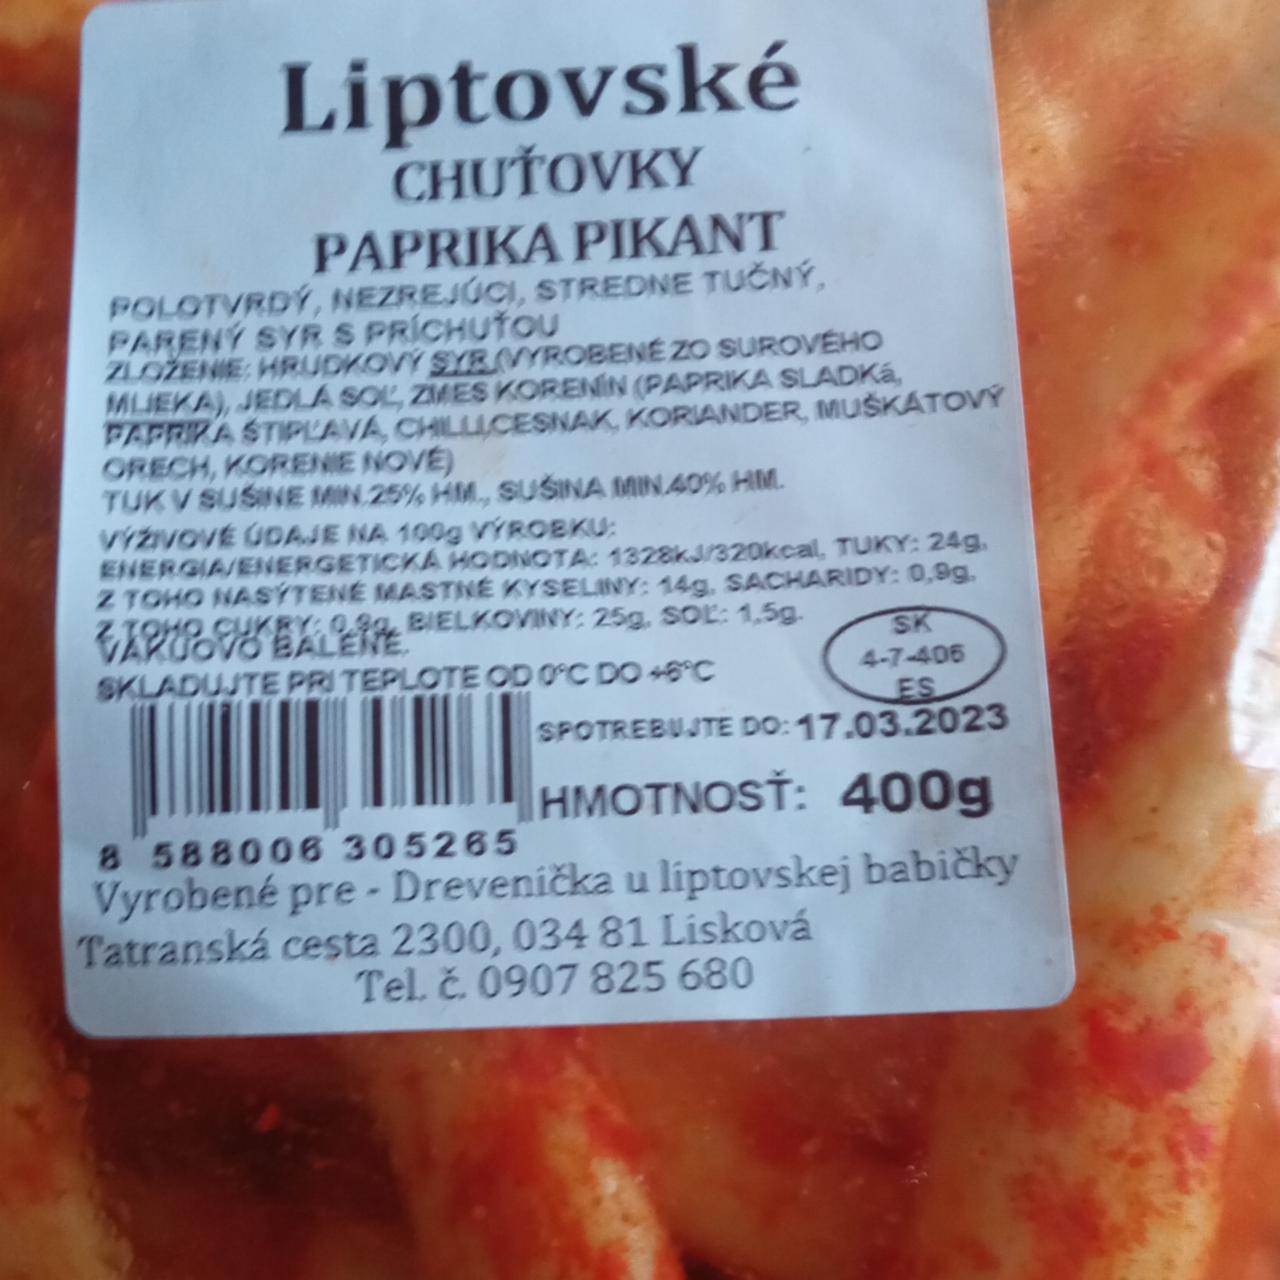 Fotografie - Liptovské chuťovky Paprika pikant Drevenička u liptovskej babičky